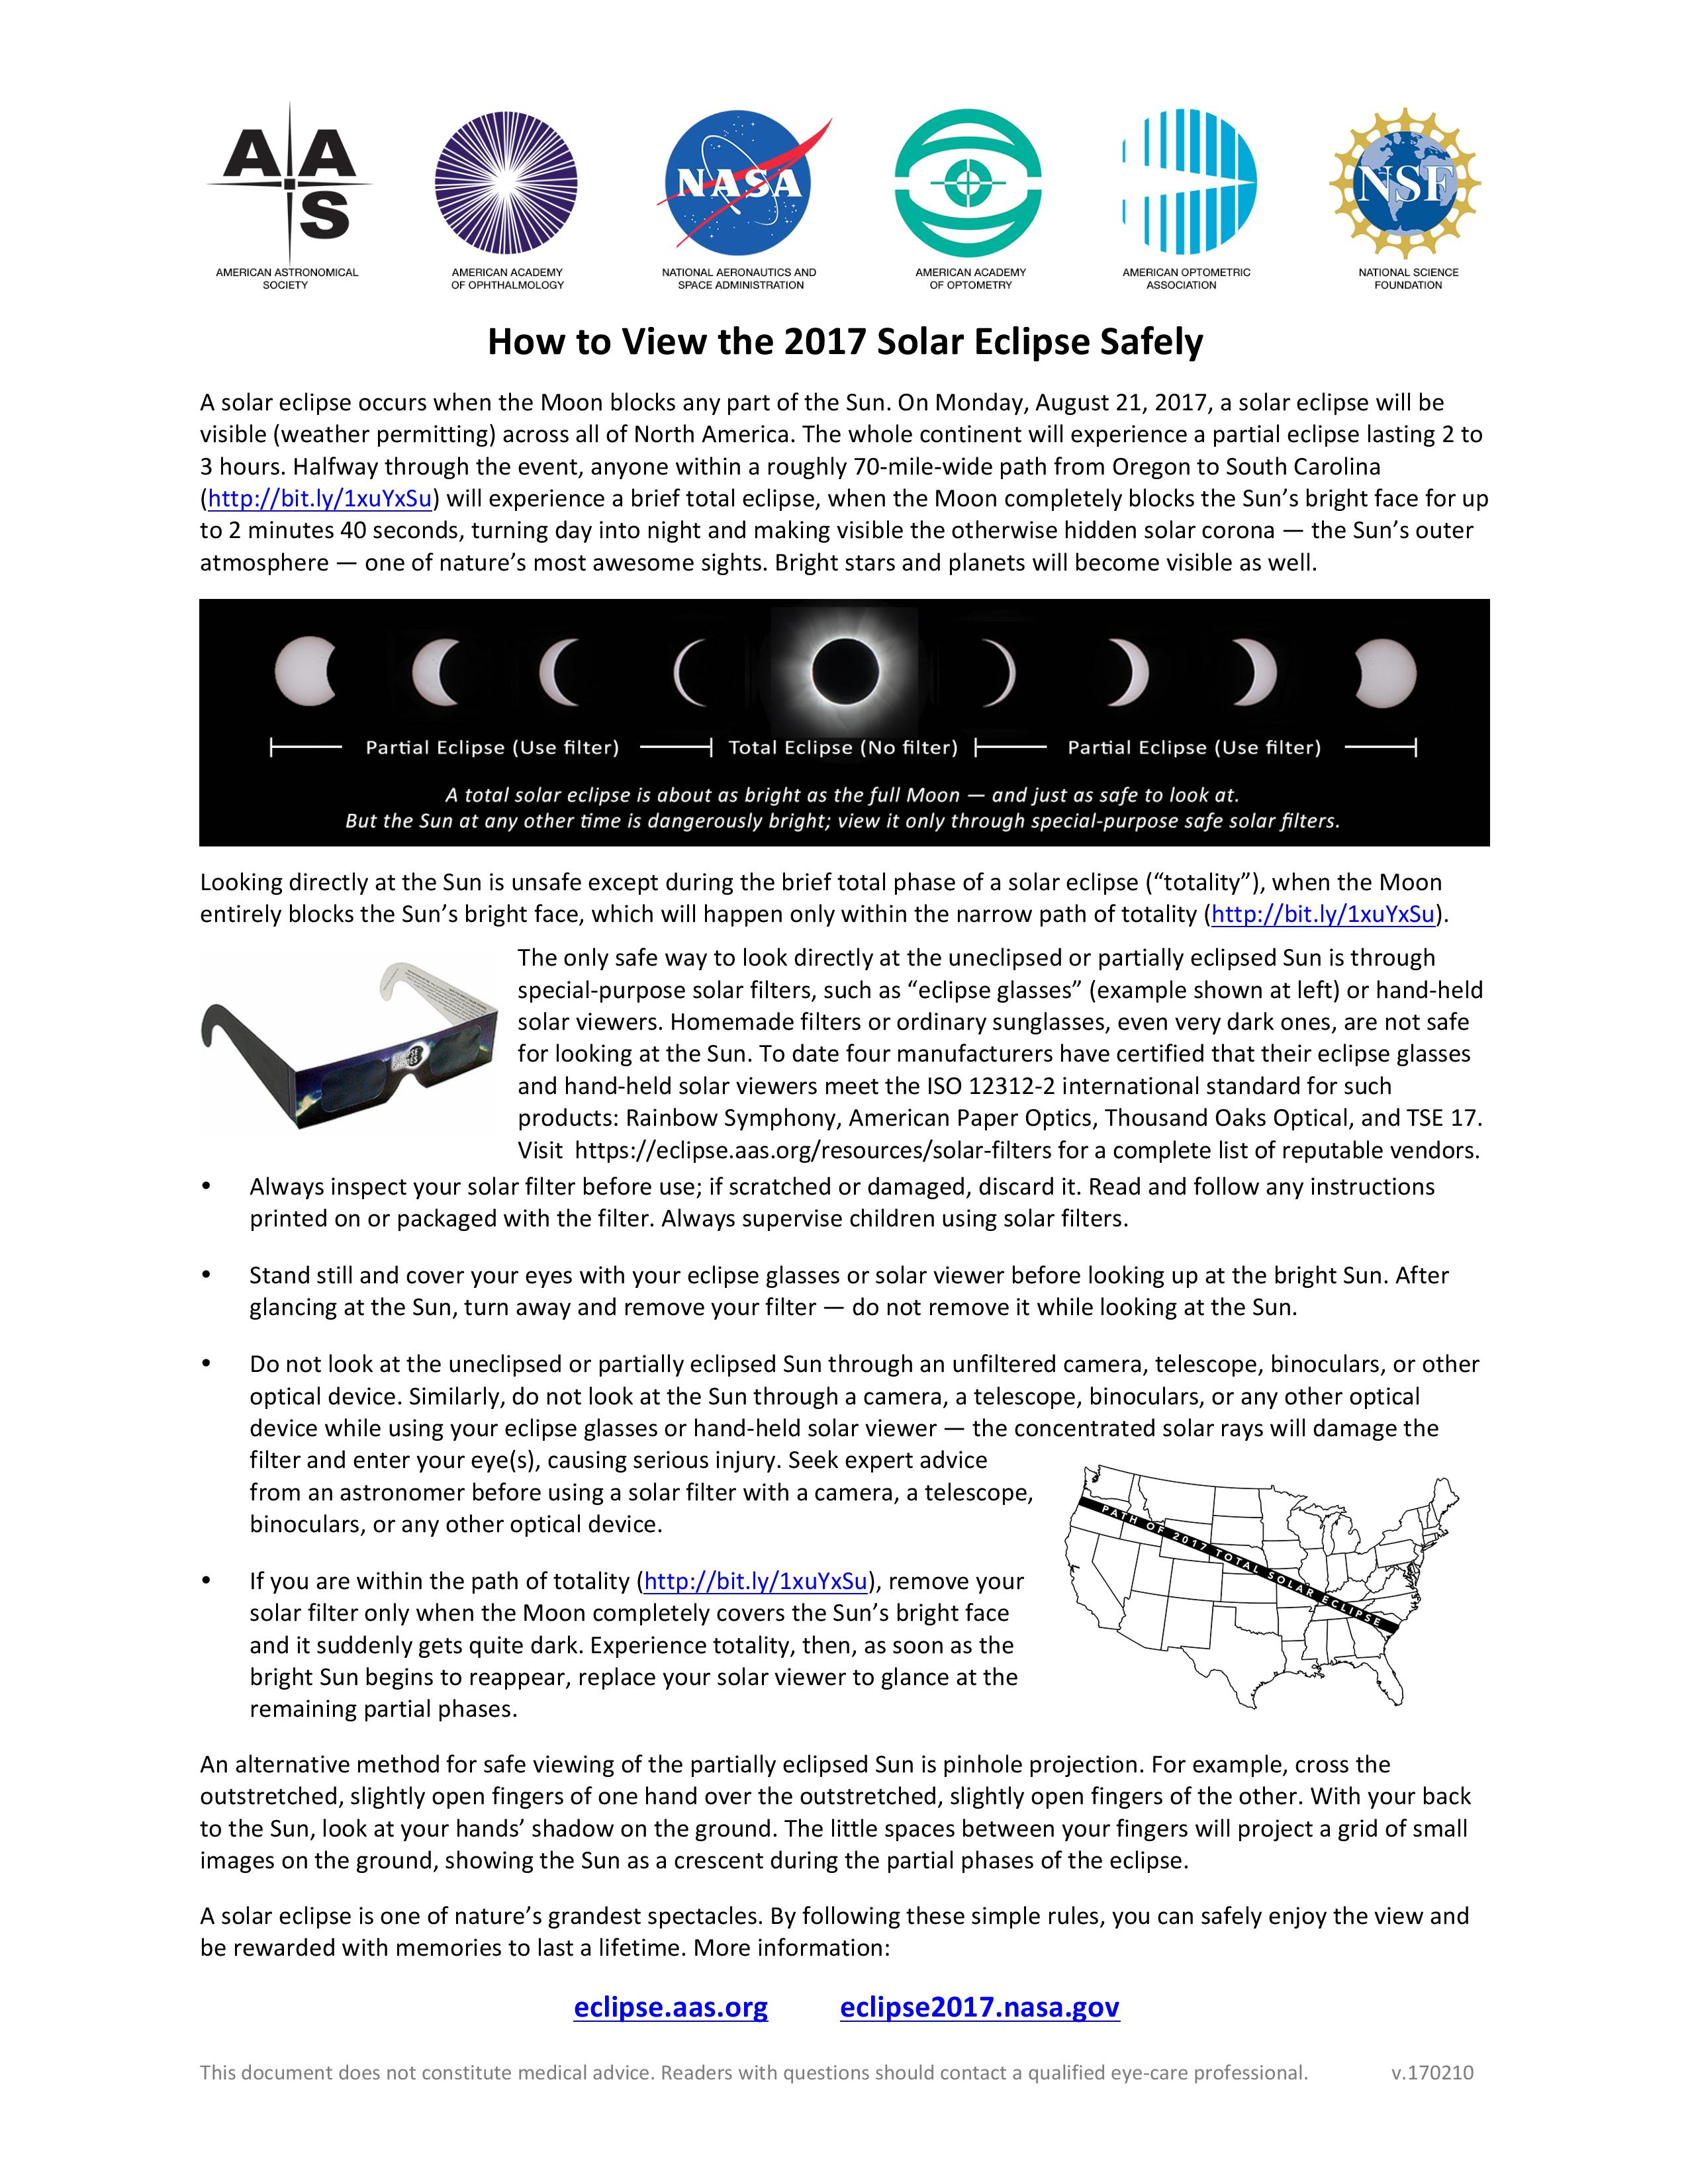 Springdale Eye Doctor Solar Eclipse Safety